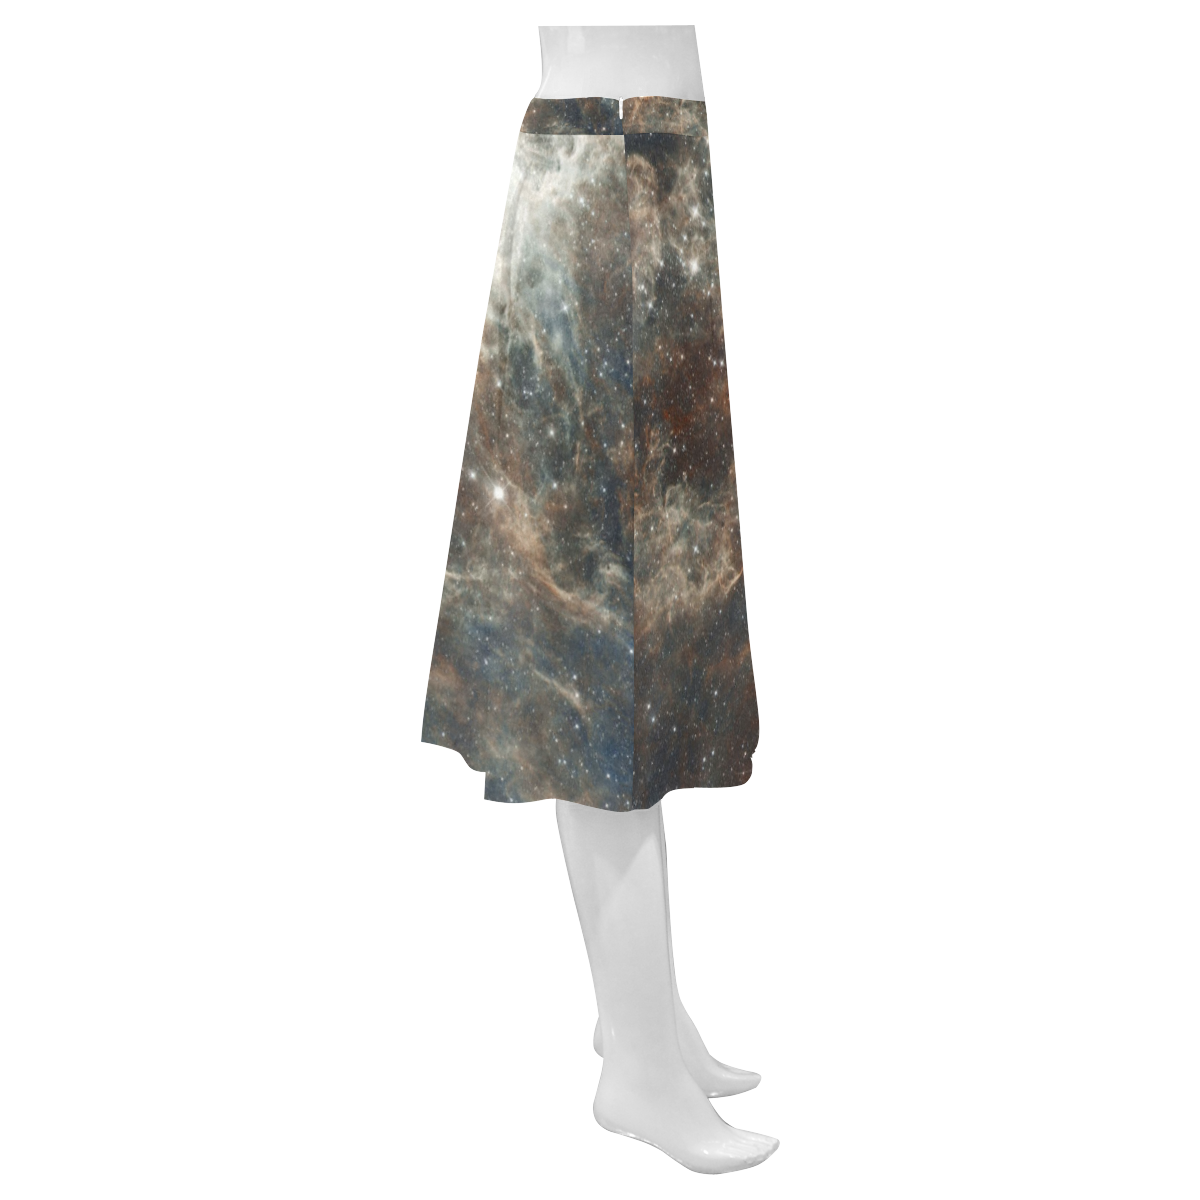 Galactical Dust Mnemosyne Women's Crepe Skirt (Model D16)